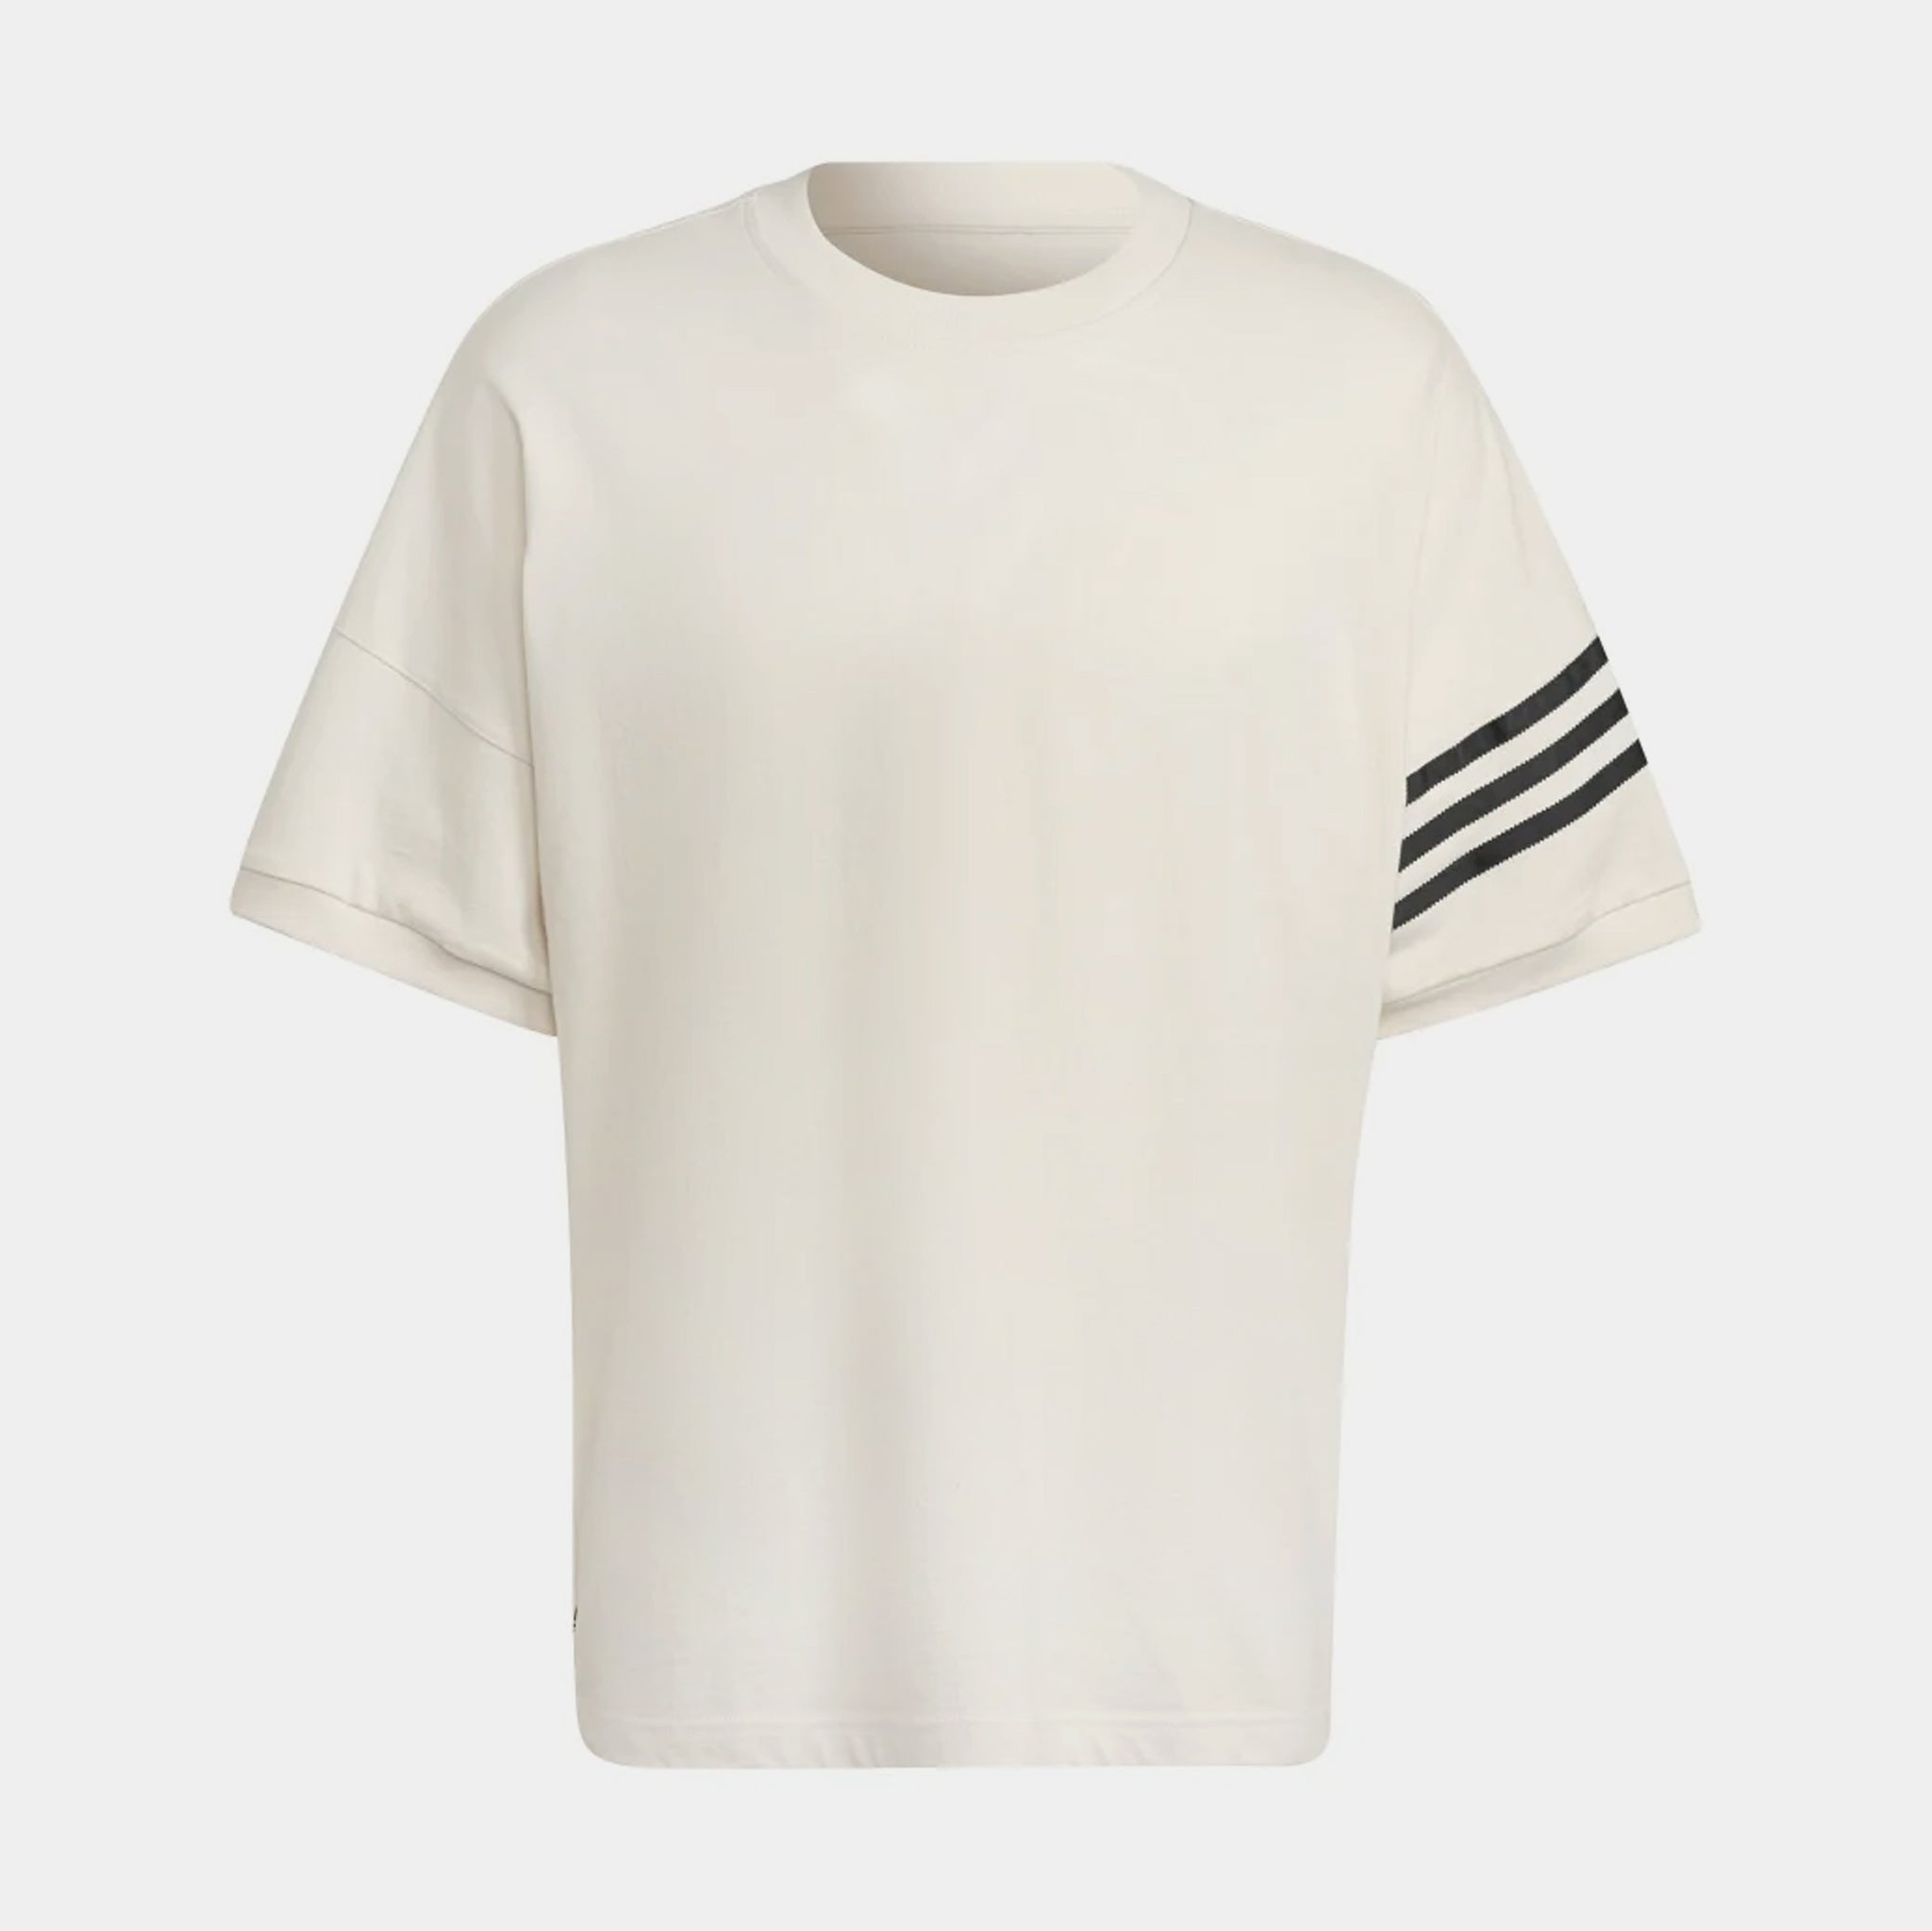 Neuclassics White Shirt – Sleeve Short adidas Palace HM1874 Adicolor Mens Shoe